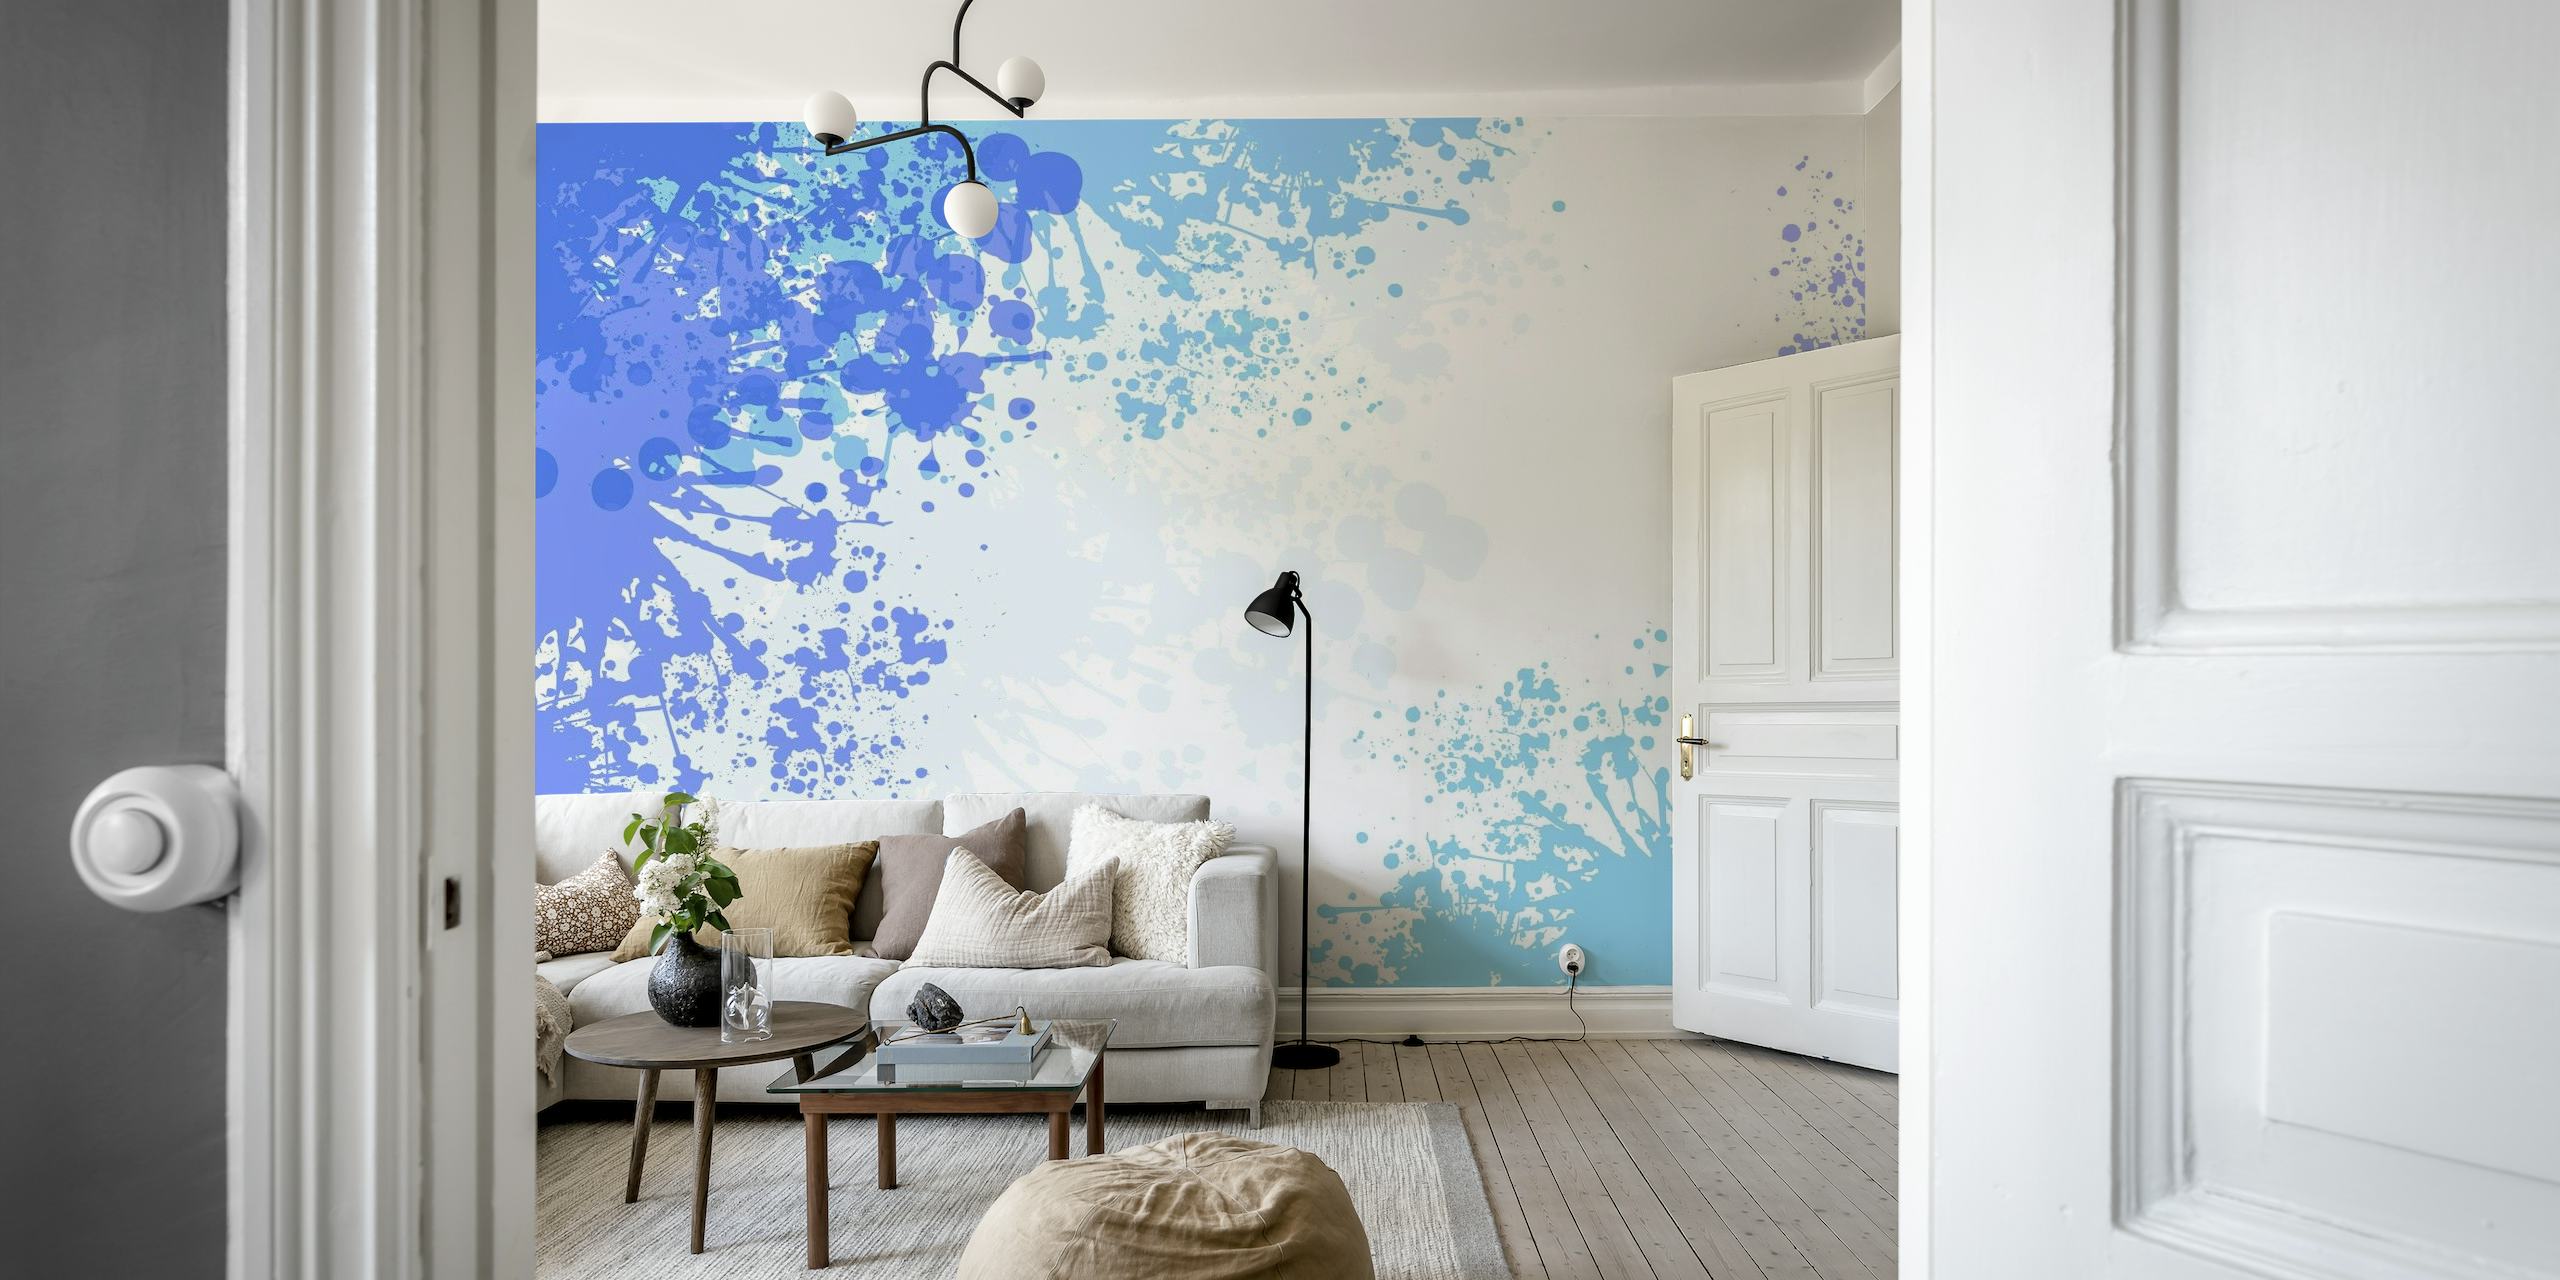 Mural de pared abstracto con salpicaduras de color azul claro con una mezcla de gotas blancas y azules más profundas en una pared.